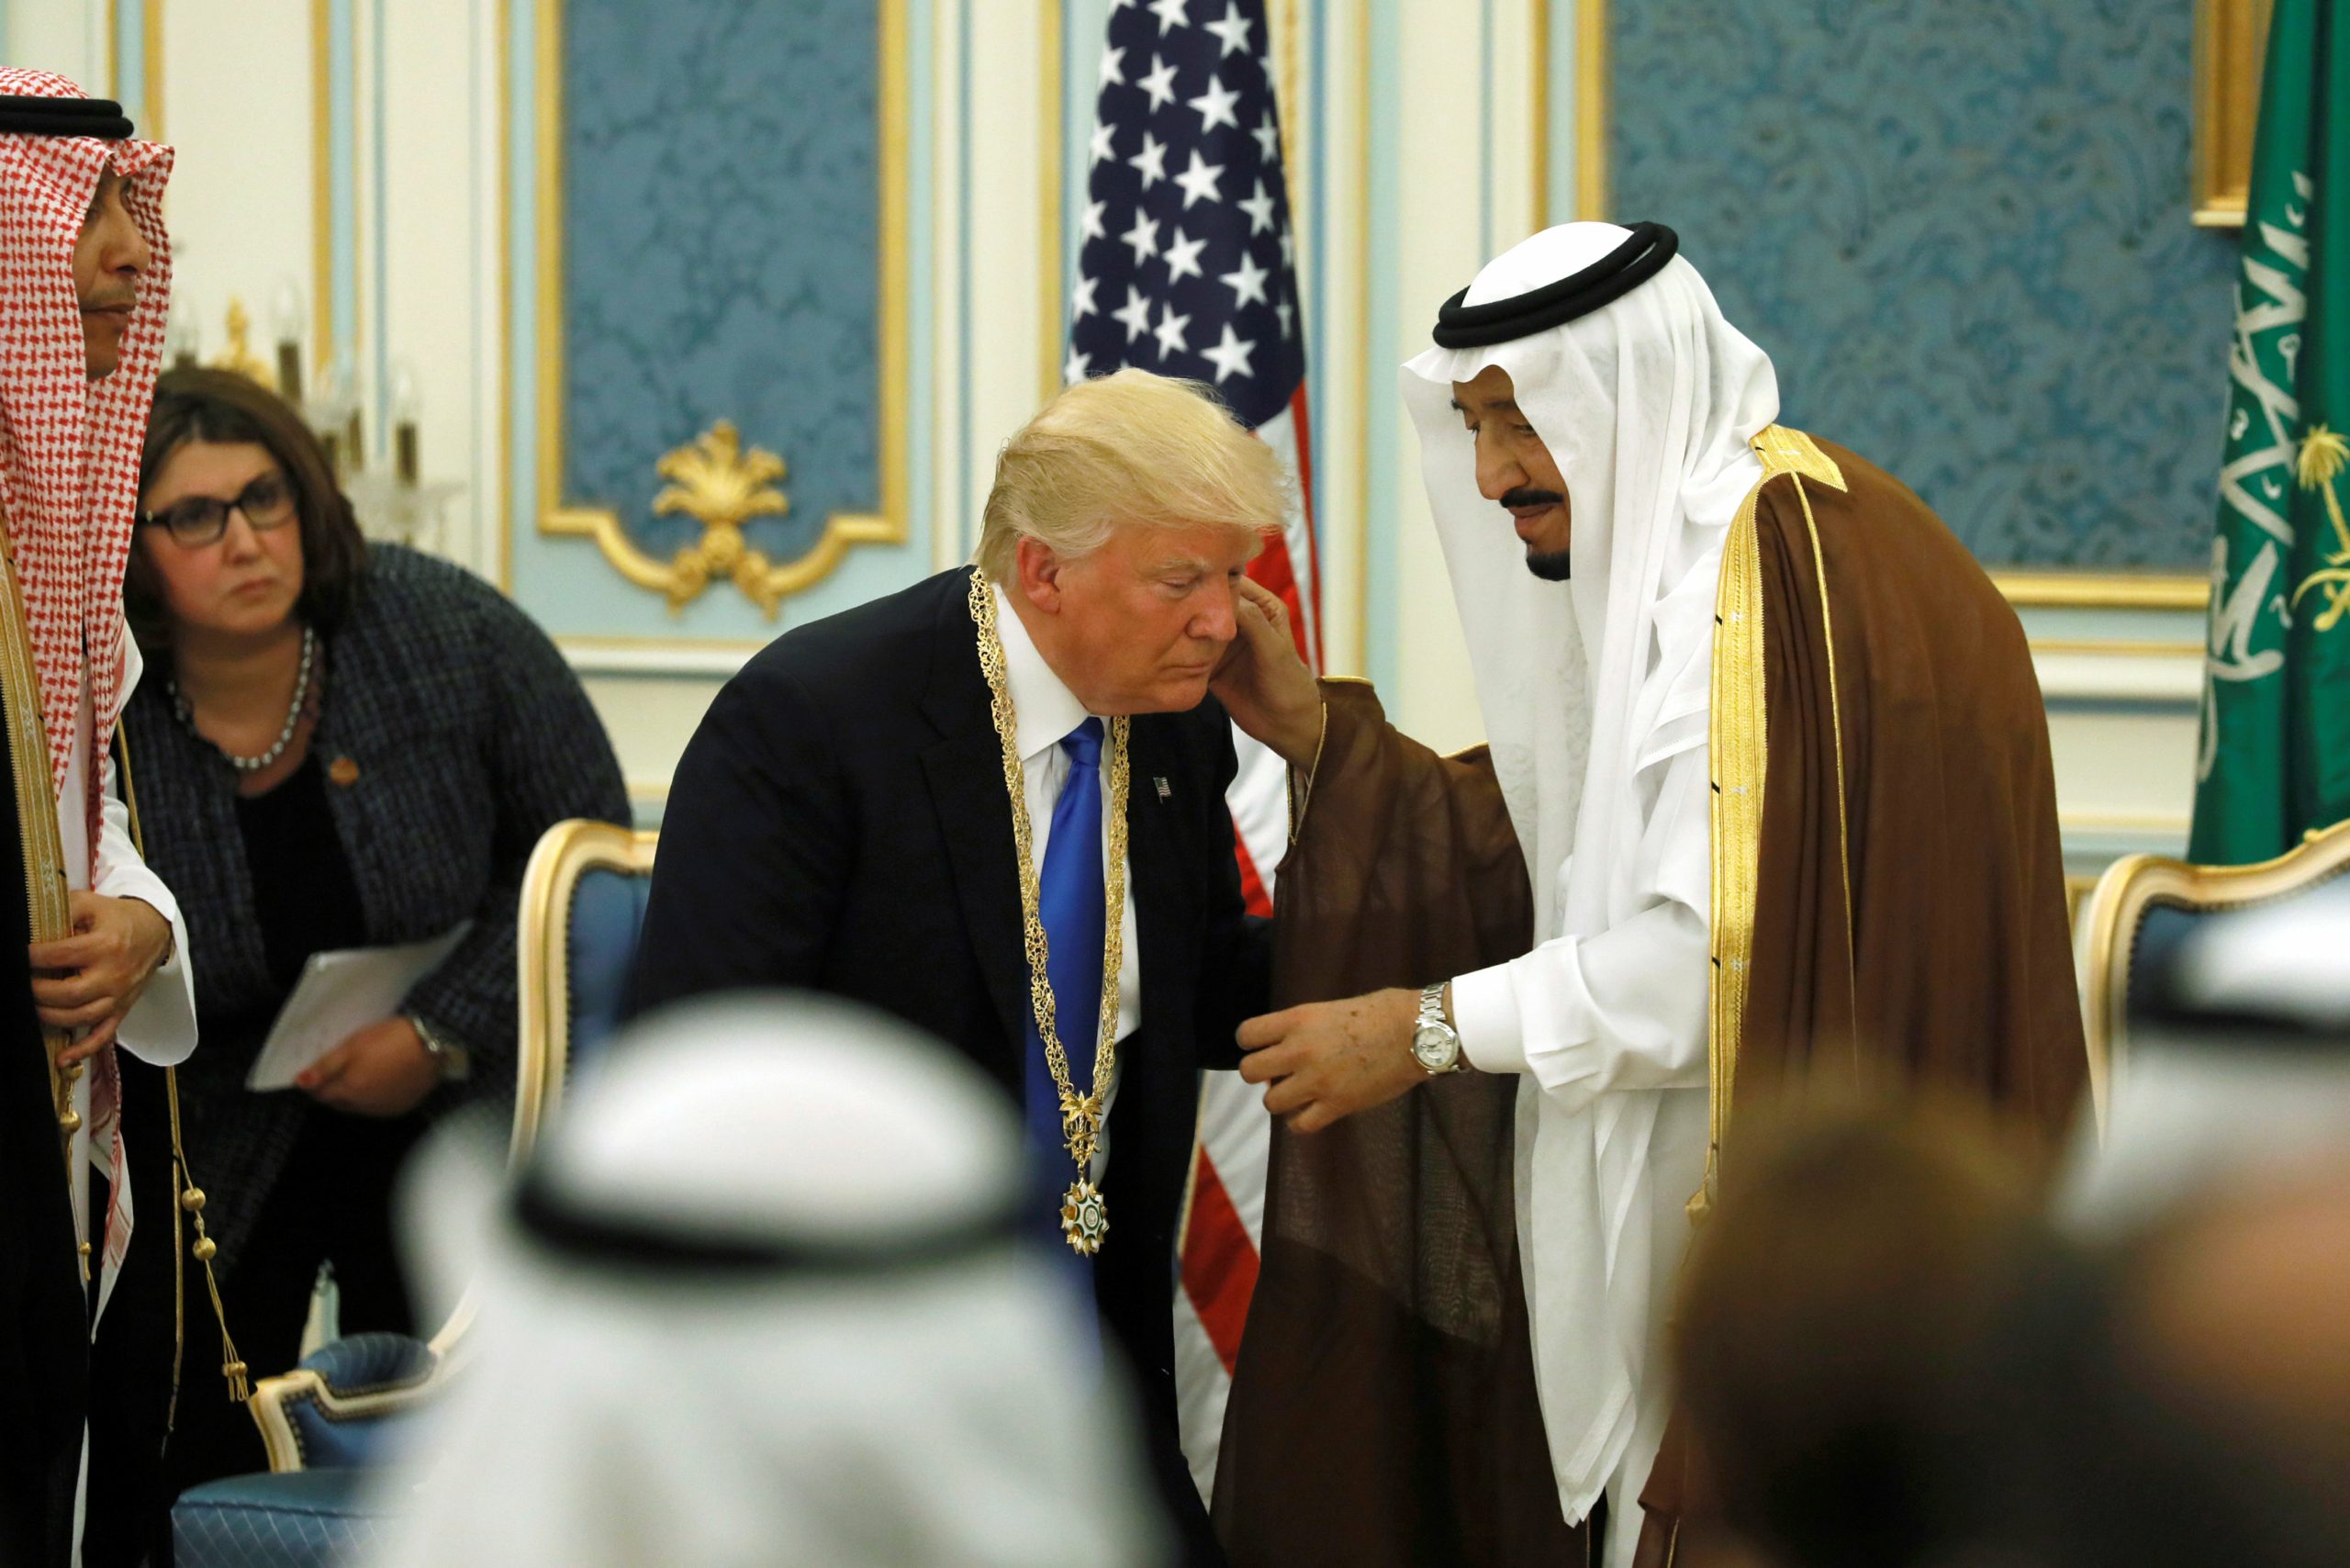 بينها هدايا من السيسي وملك السعودية وولي عهده سجل الهدايا المقدمة لترامب يكشف تراجع سخاء الزعماء الأجانب